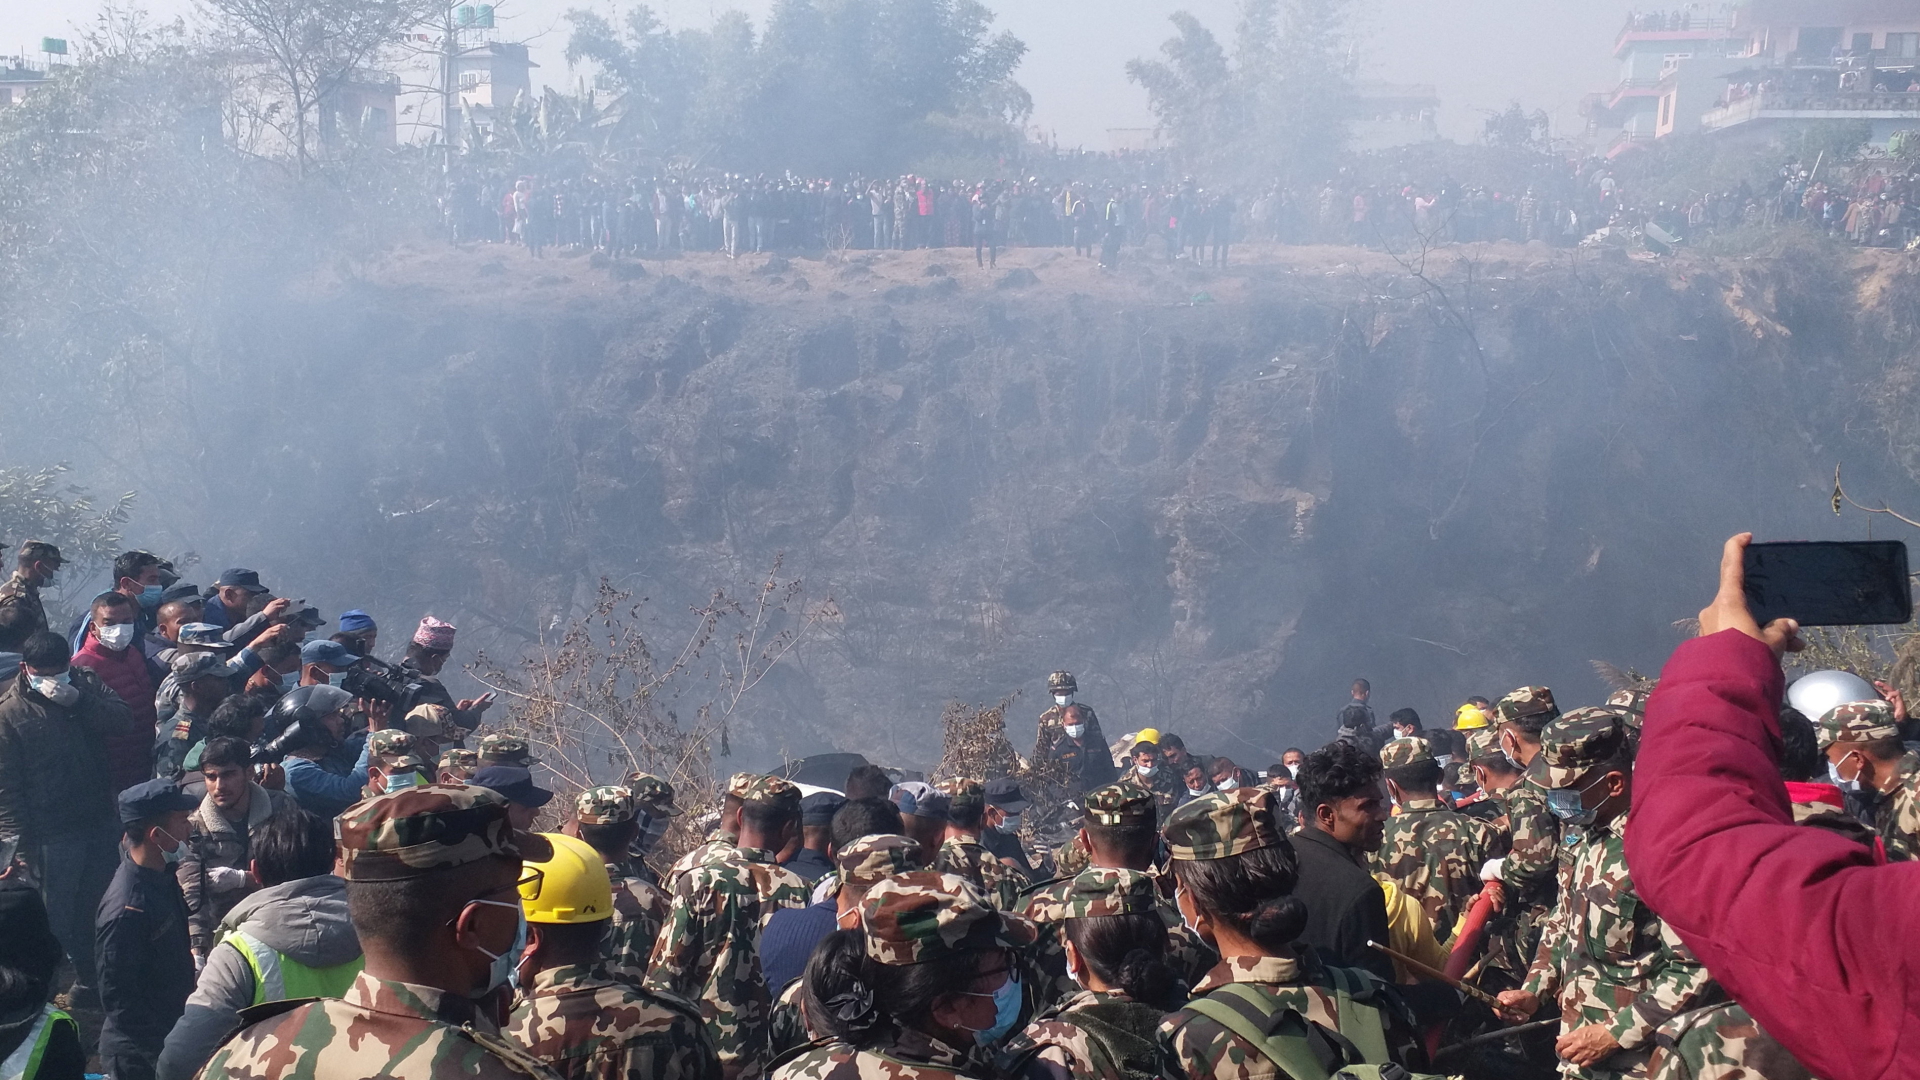 Menschenmengen versammeln sich, während Rettungsteams an der Absturzstelle eines Flugzeugs die Leichen bergen. | via REUTERS